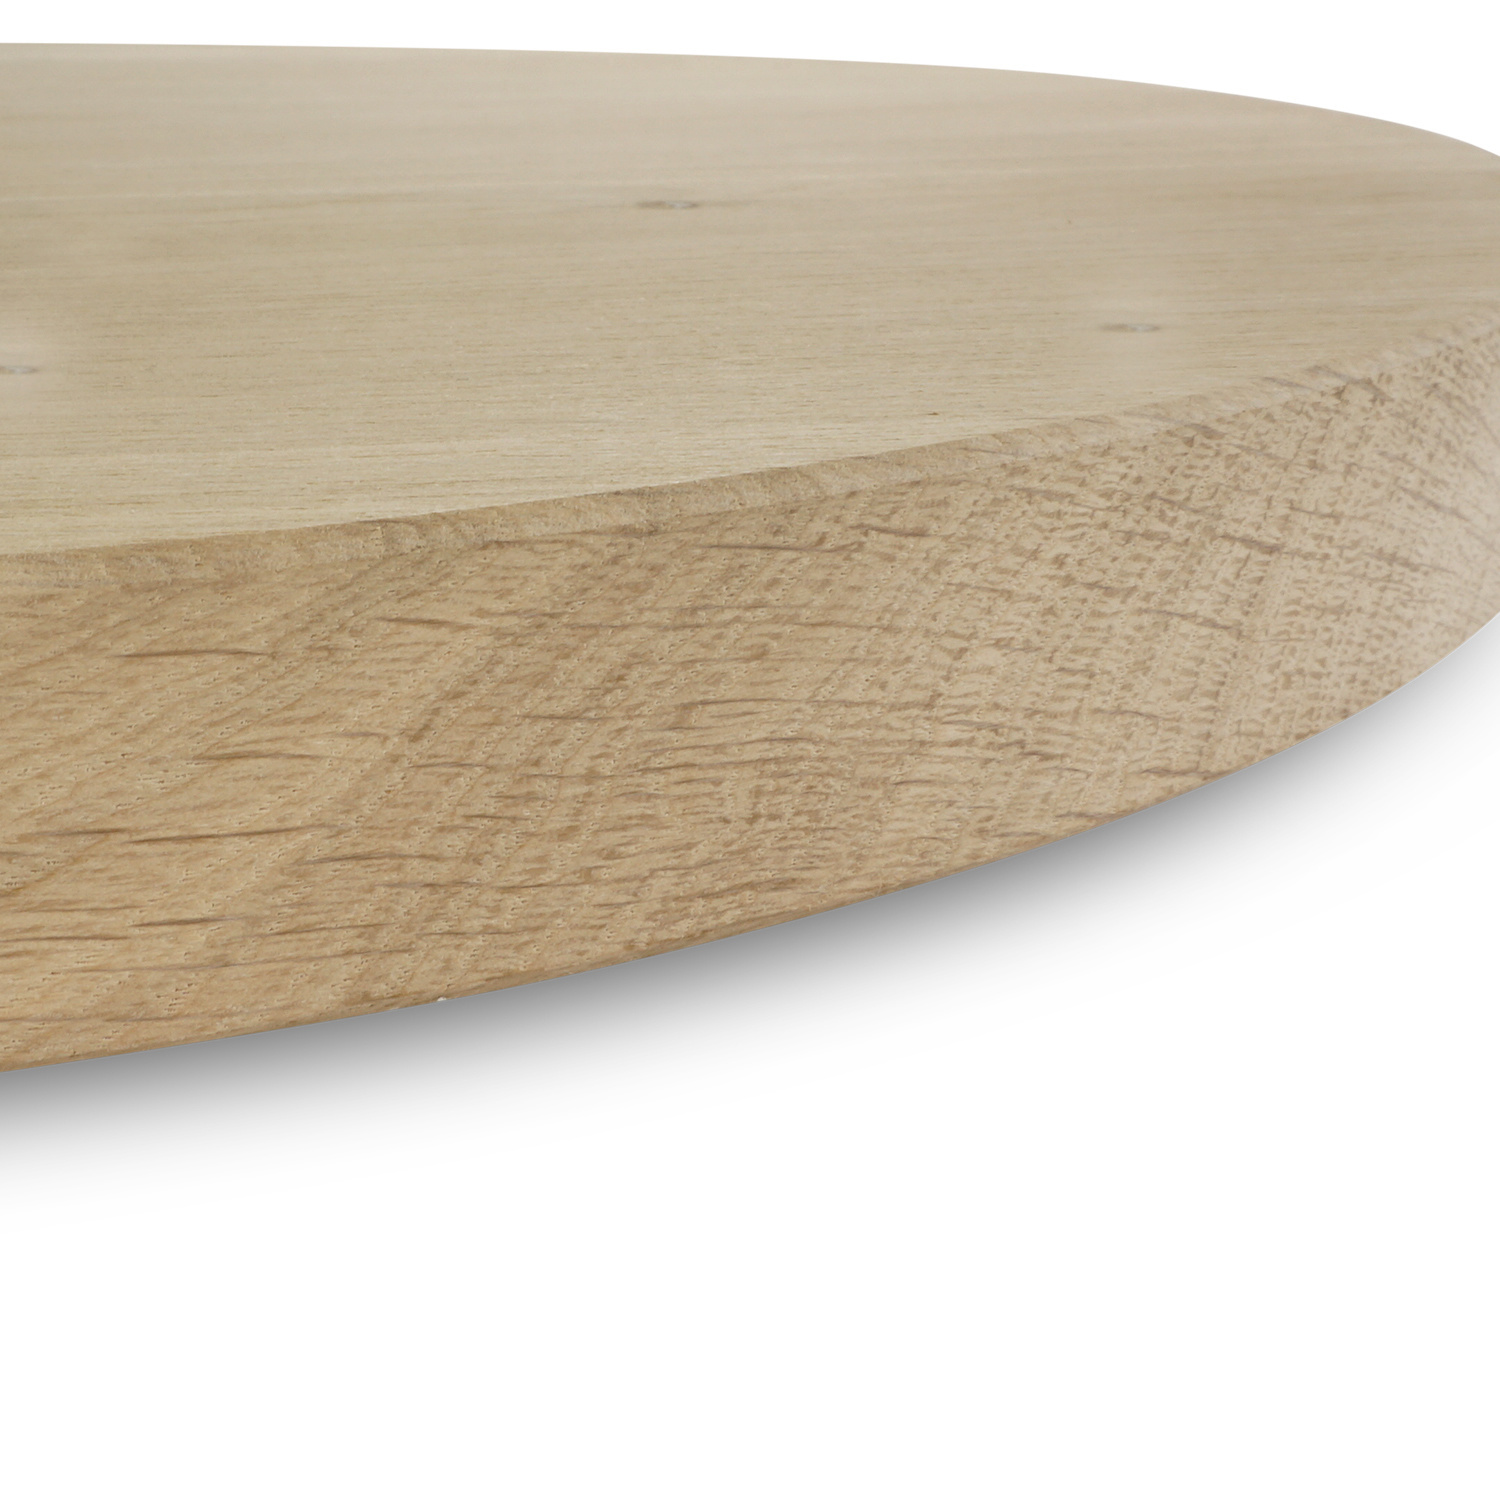  Tischplatte Eiche rund - 2,7 cm dick (1-Schicht) - Breite Lamellen (10 - 12 cm breit) - Eichenholz A-Qualität - verleimt & künstlich getrocknet (HF 8-12%) - verschiedene Größen